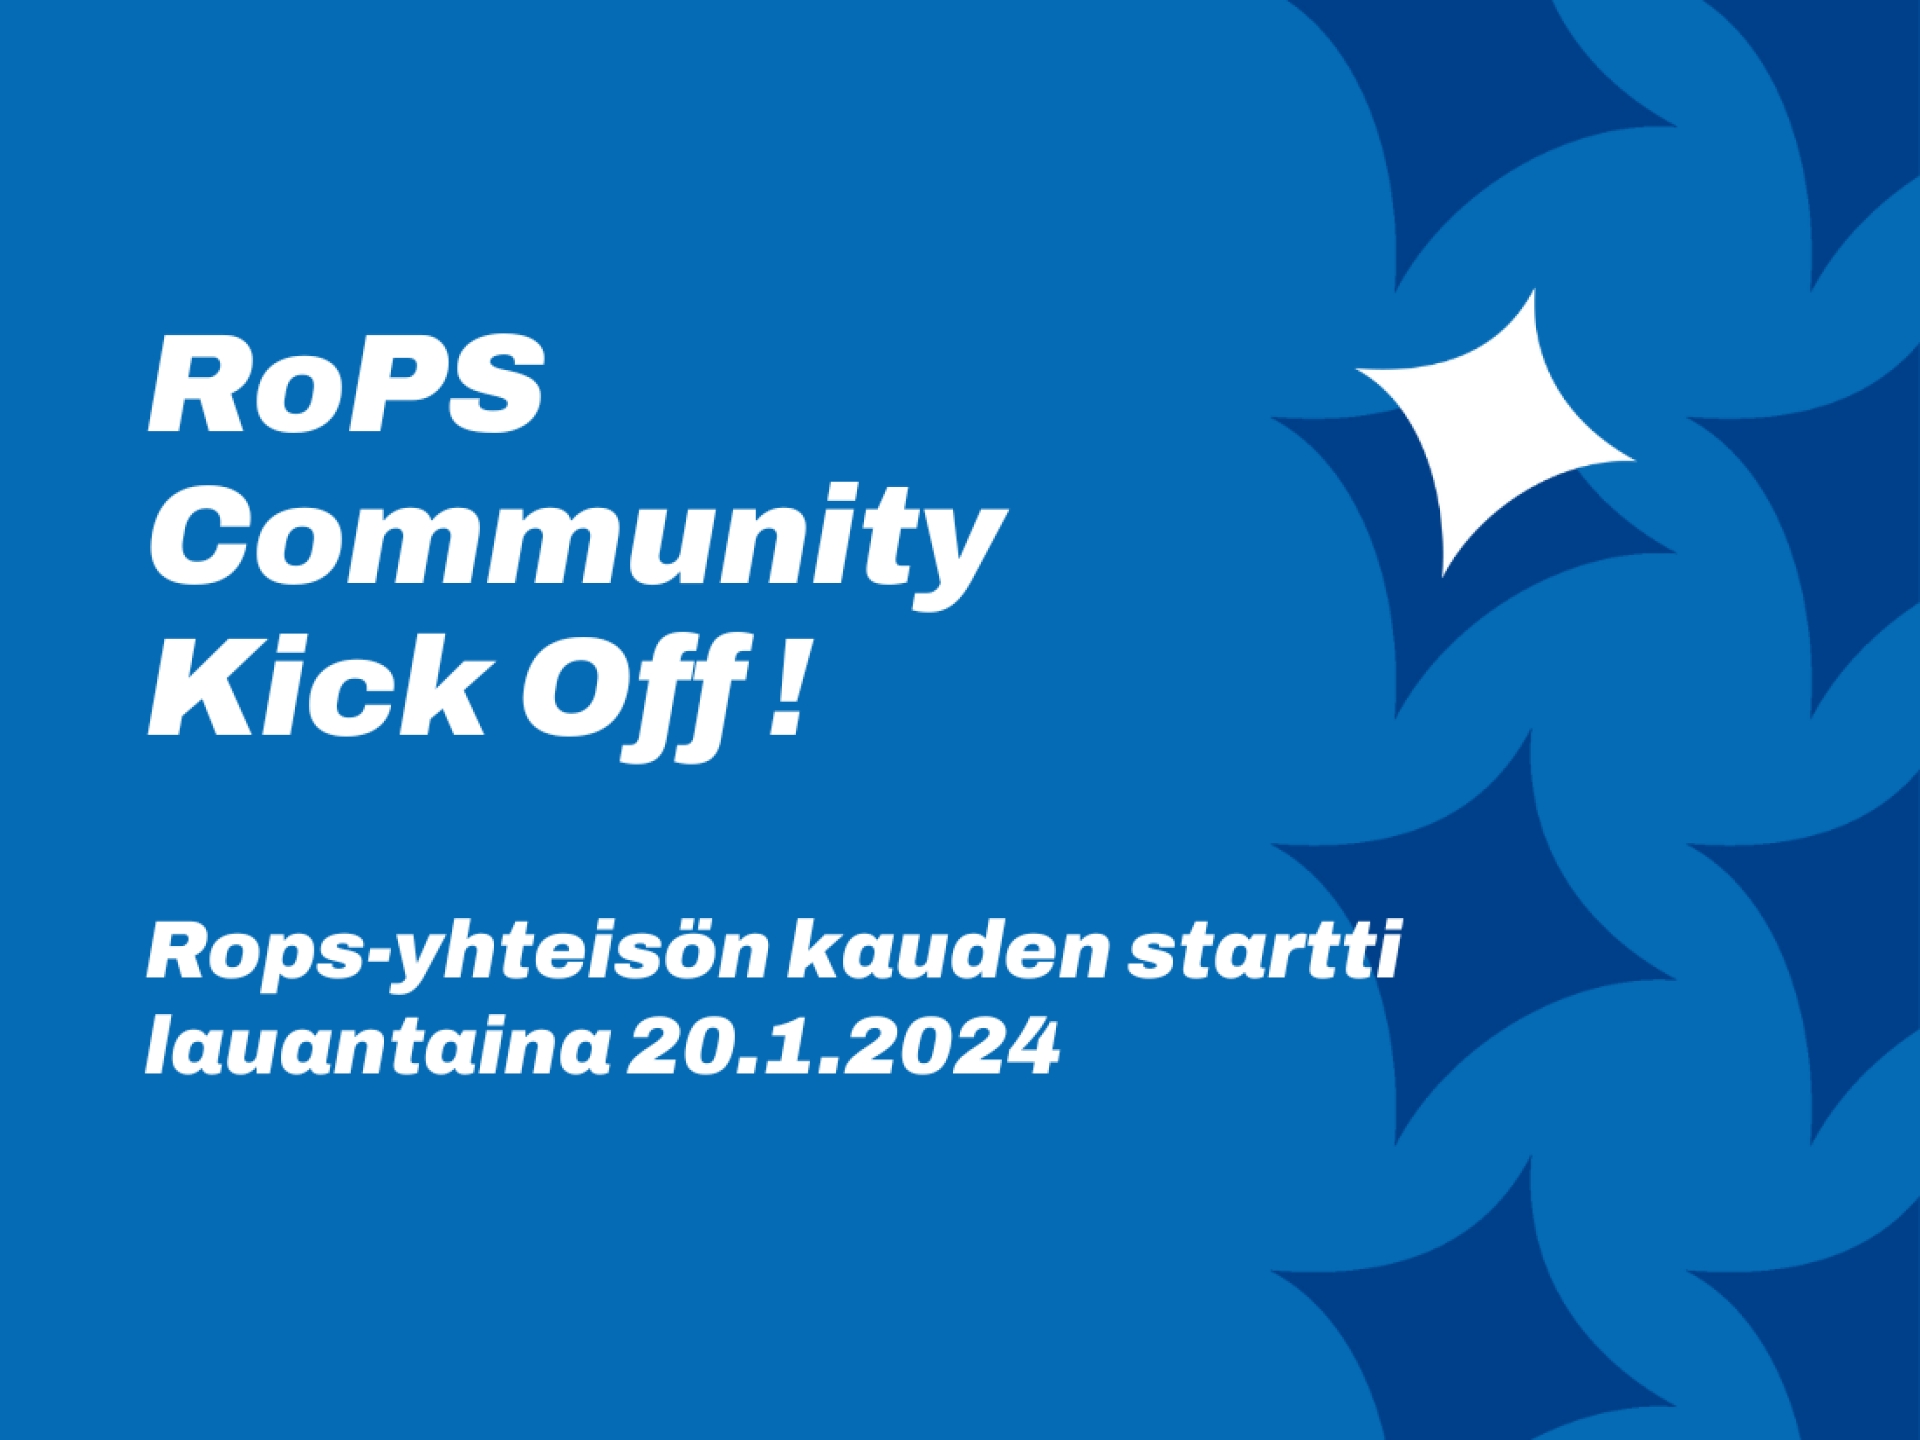 RoPS Community Kick Off eli koko seurayhteisön aloitusbileet 20.1.2024!